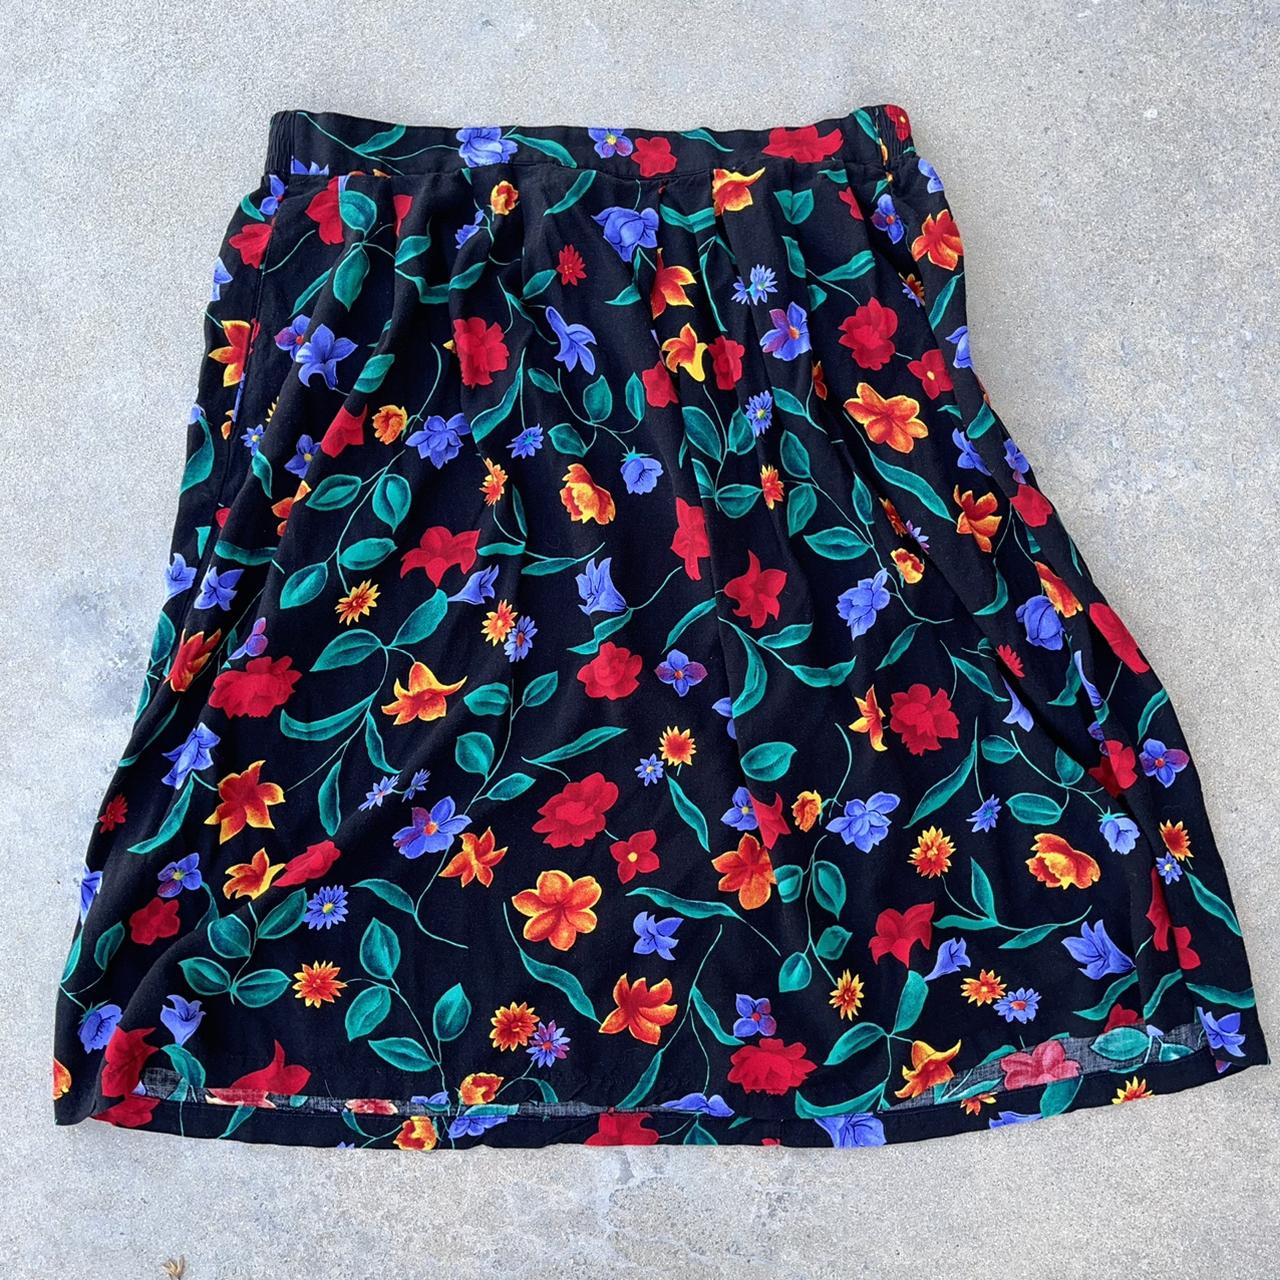 Adorable vintage floral midi skirt !!🎞 super funky... - Depop